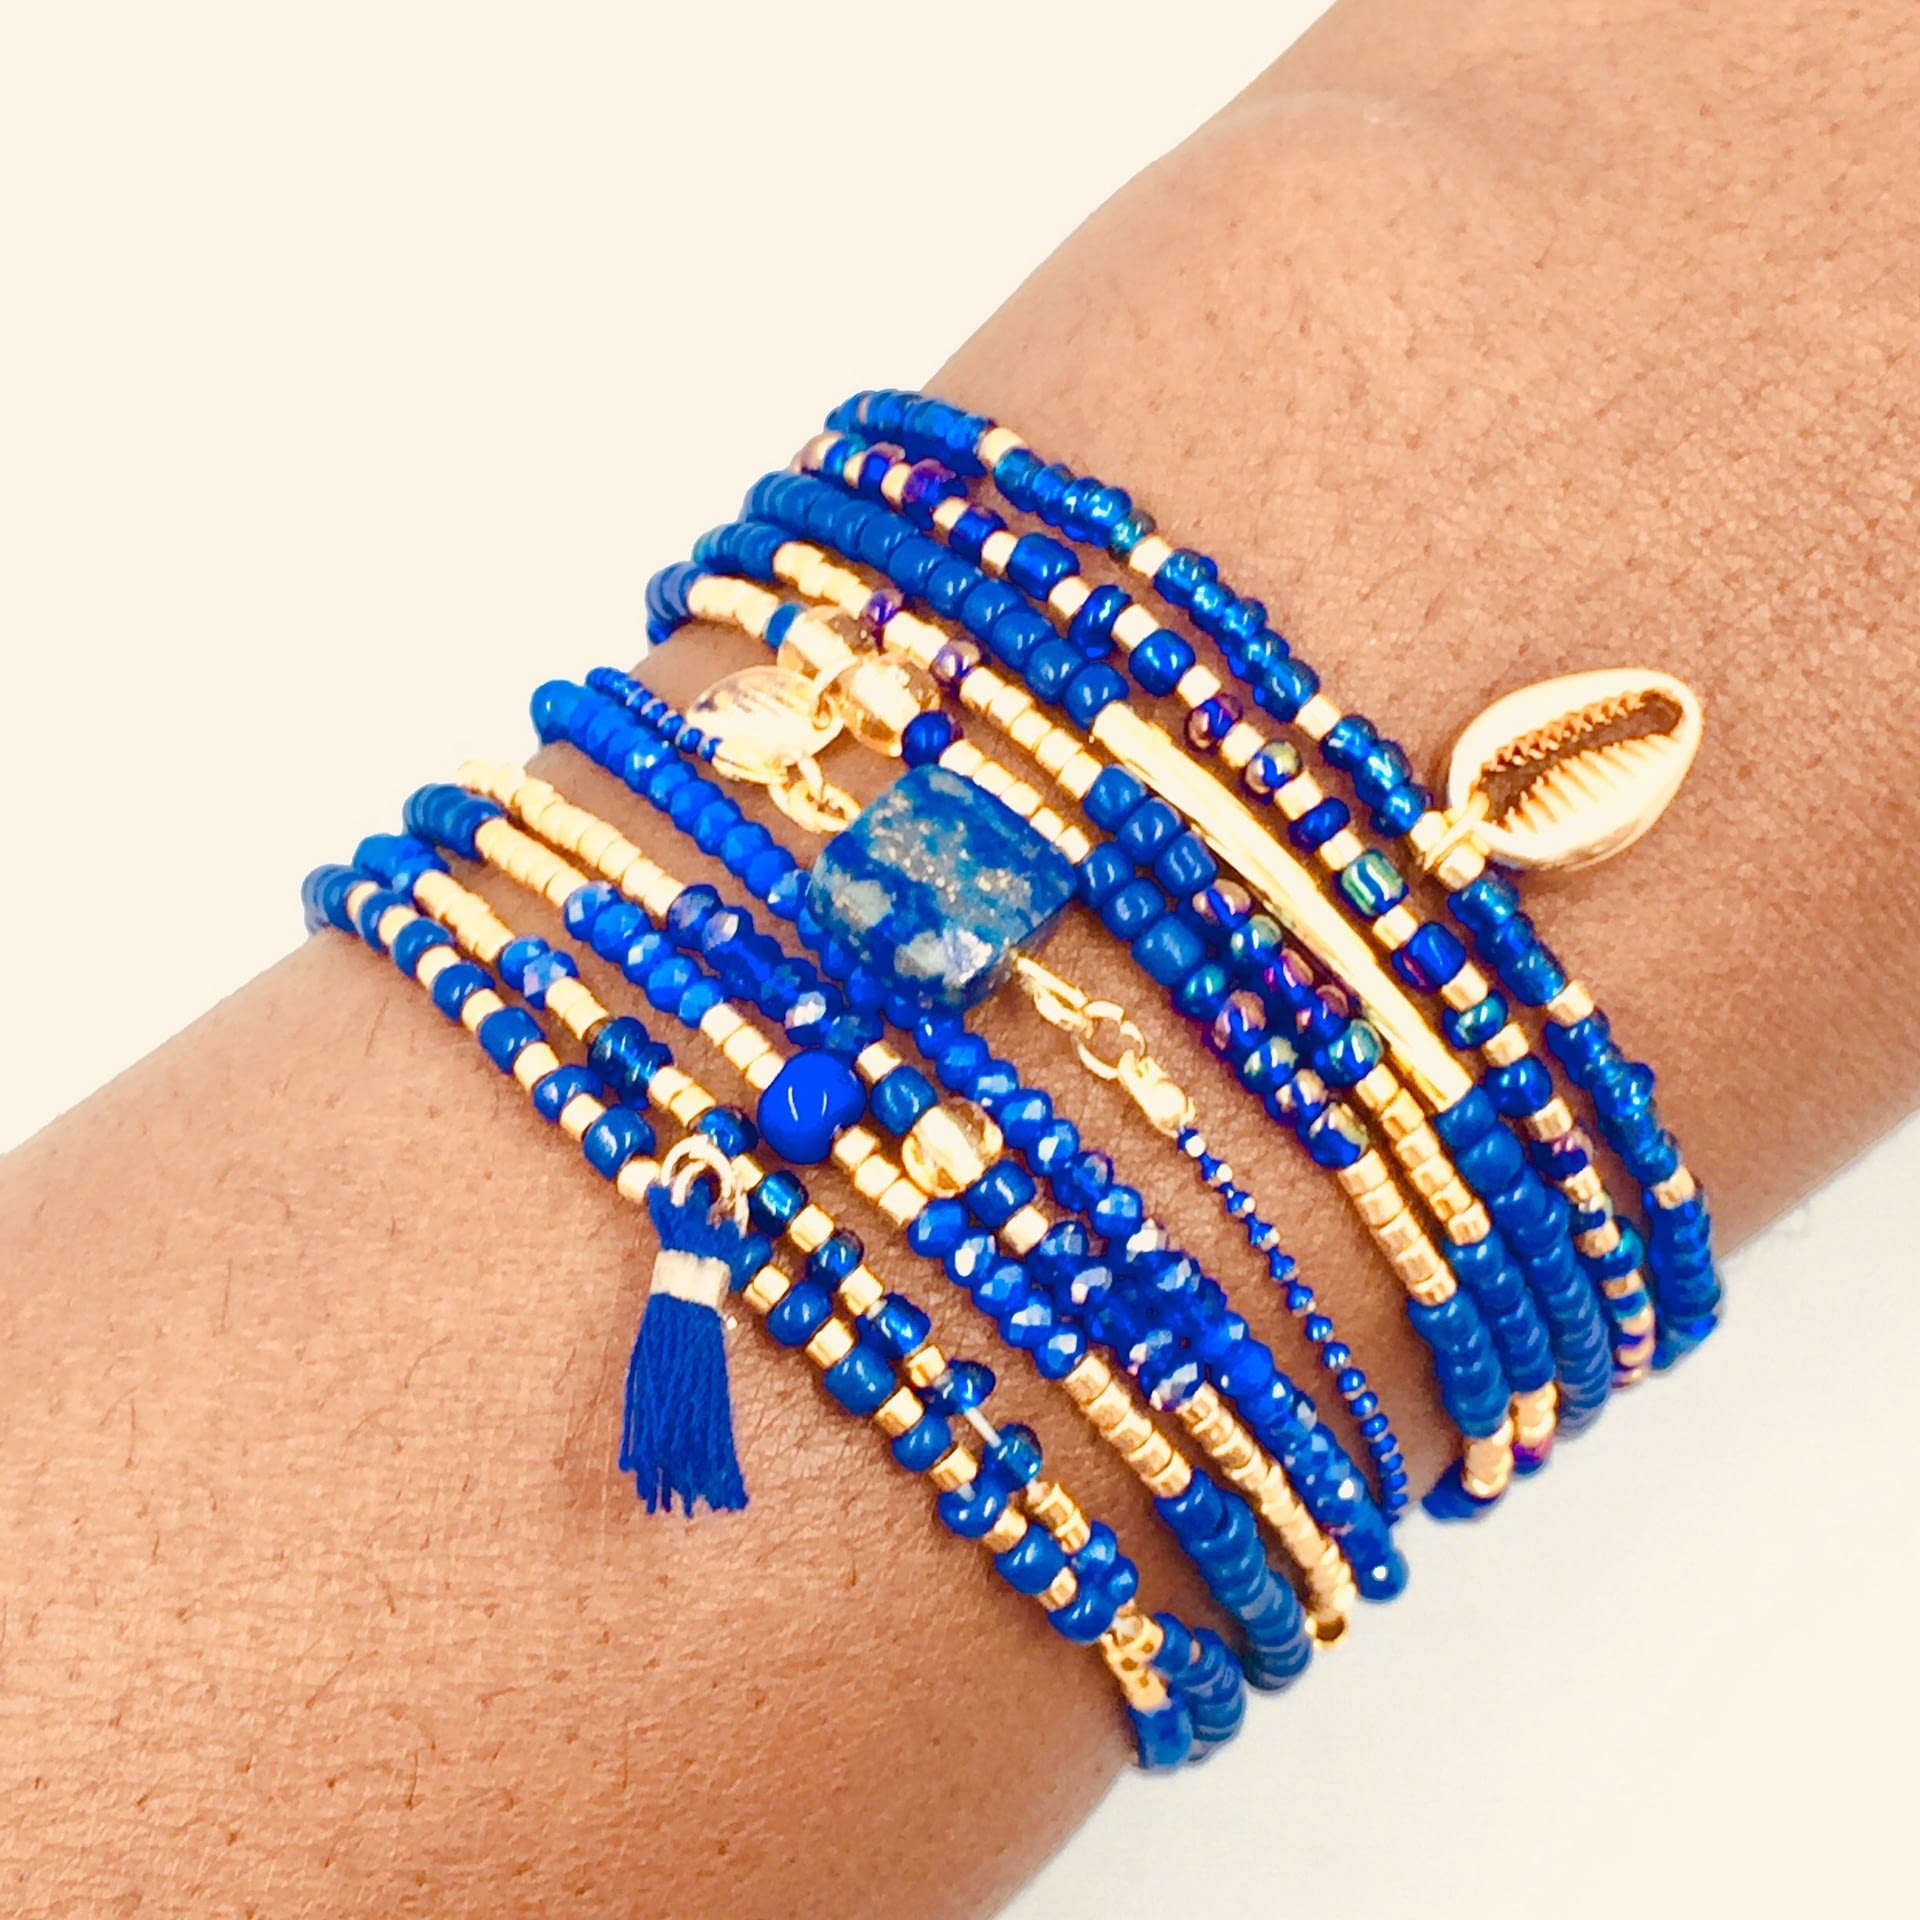 Le Bracelet élastique Mix - Bleu égyptien et or